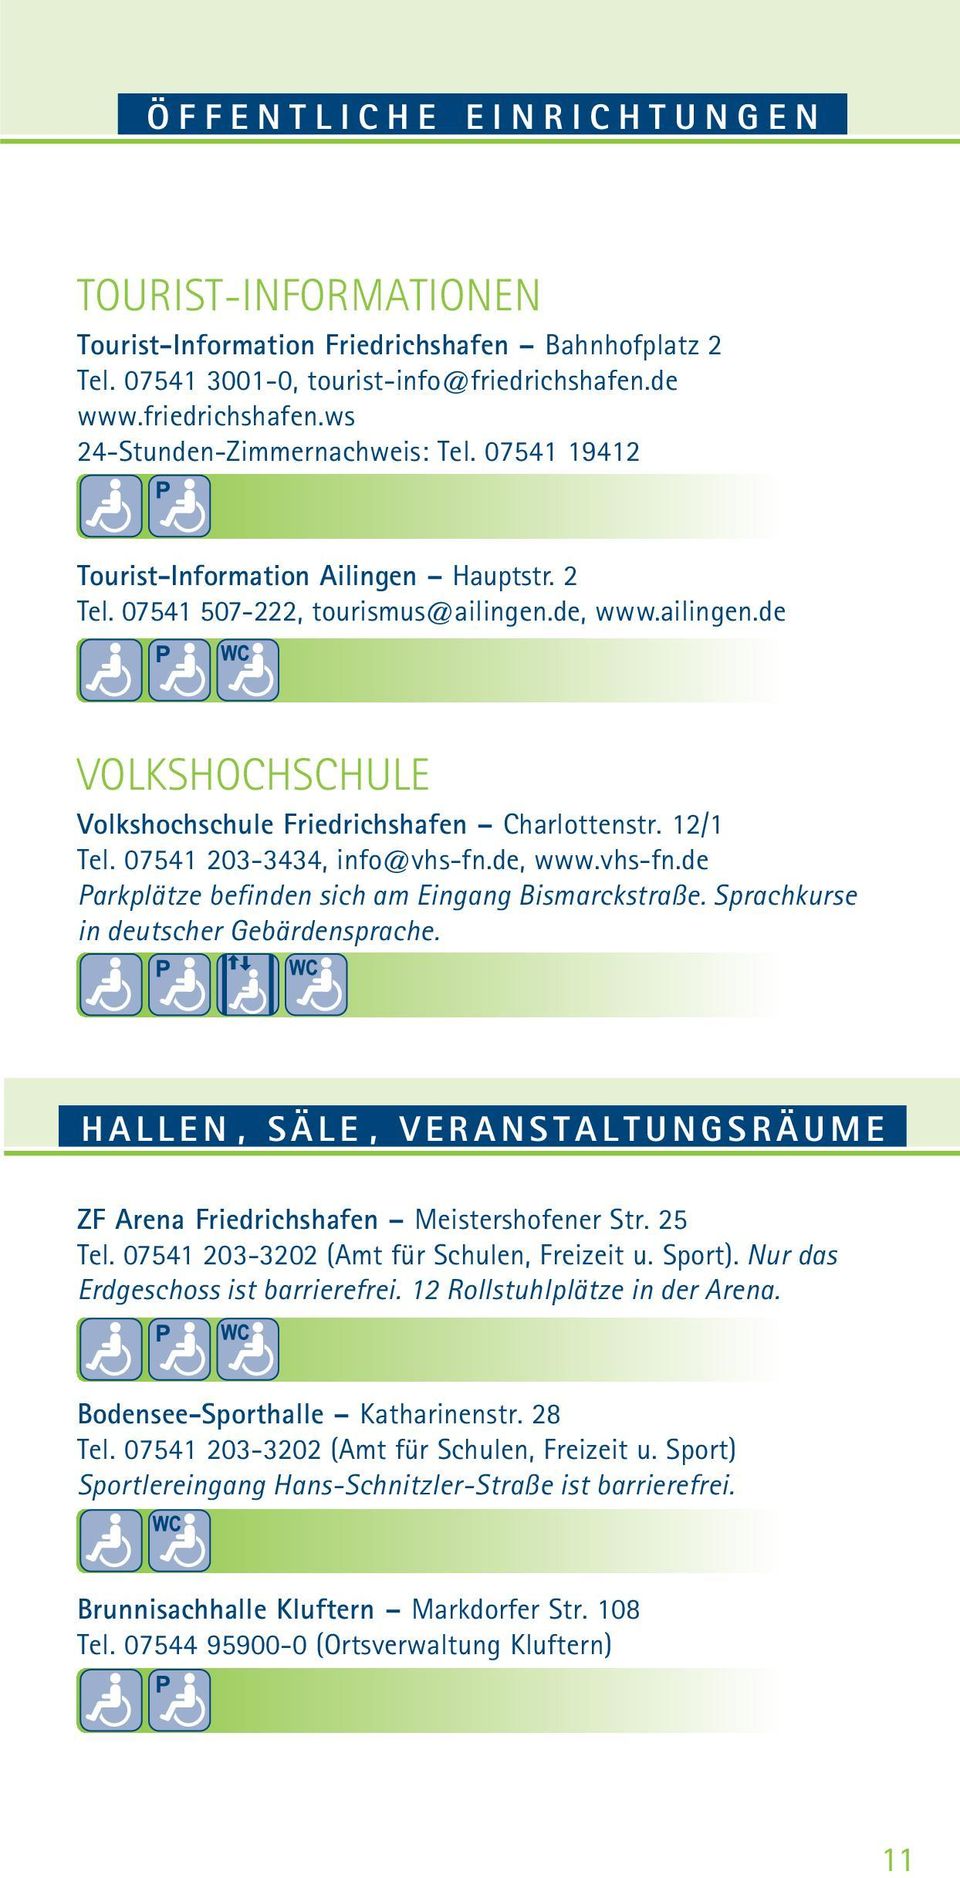 07541 203-3434, info@vhs-fn.de, www.vhs-fn.de Parkplätze befinden sich am Eingang Bismarckstraße. Sprachkurse in deutscher Gebärdensprache.